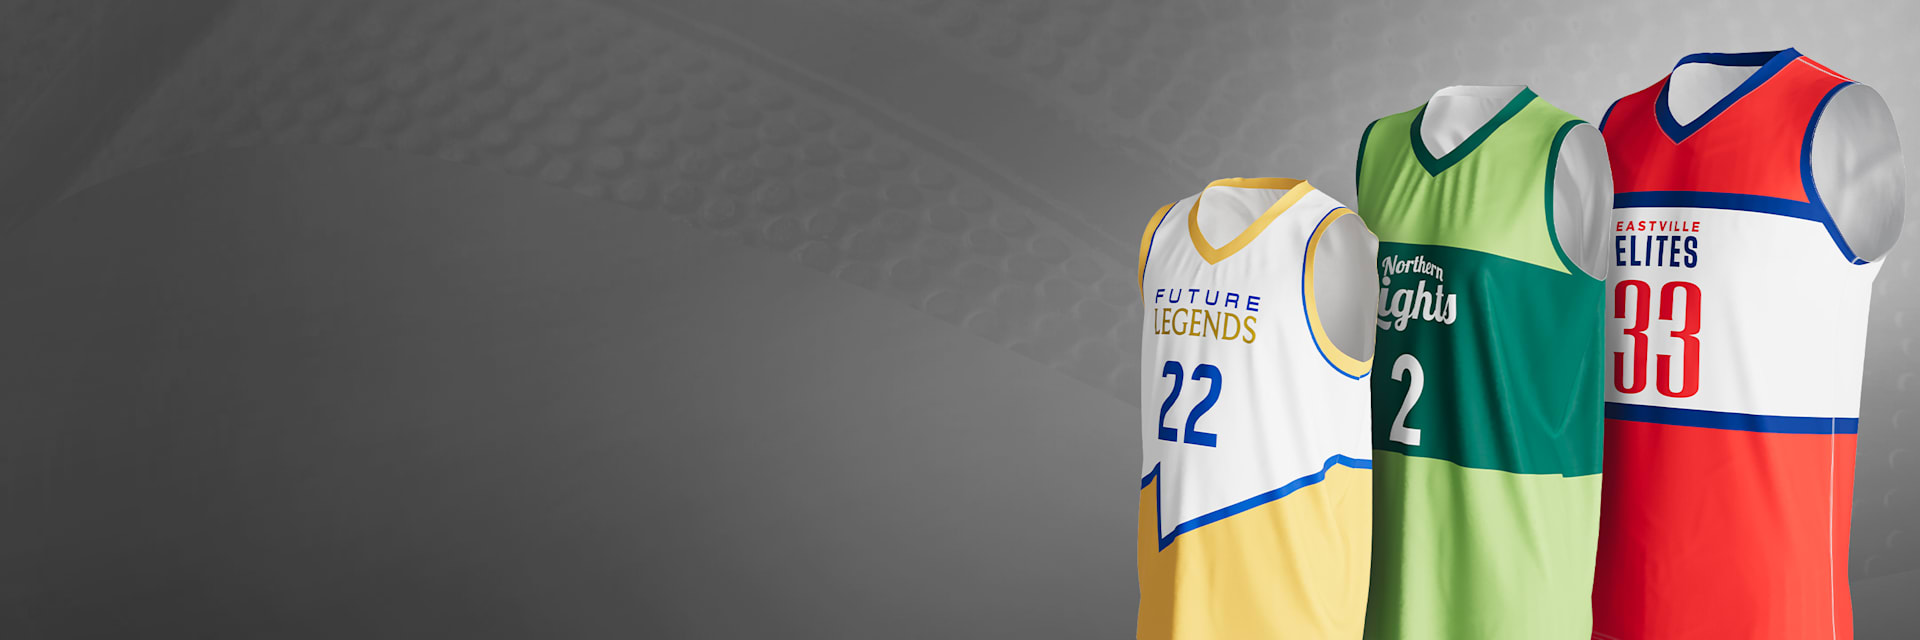 create basketball jersey design online